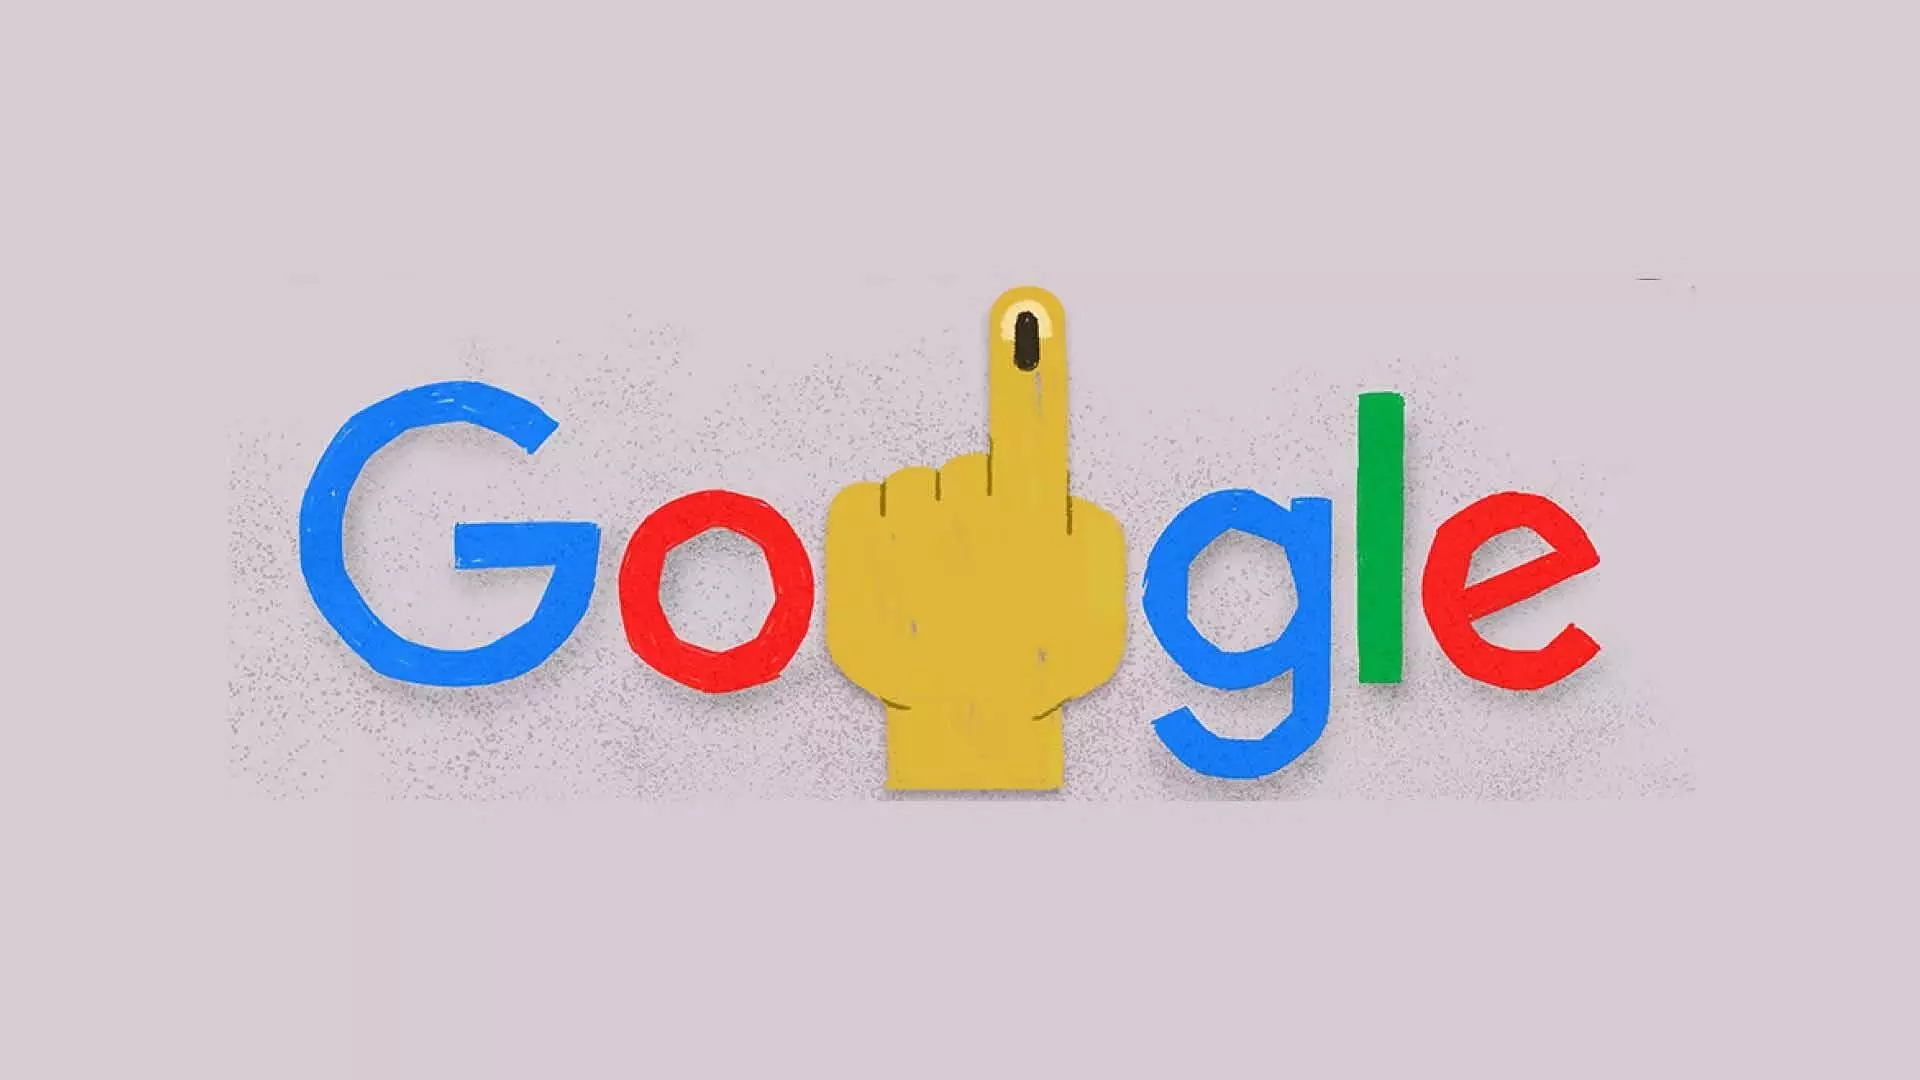 गूगल ने election के लिए बनाया नया डूडल, स्याही के साथ दिख रही इंडेक्स फिंगर